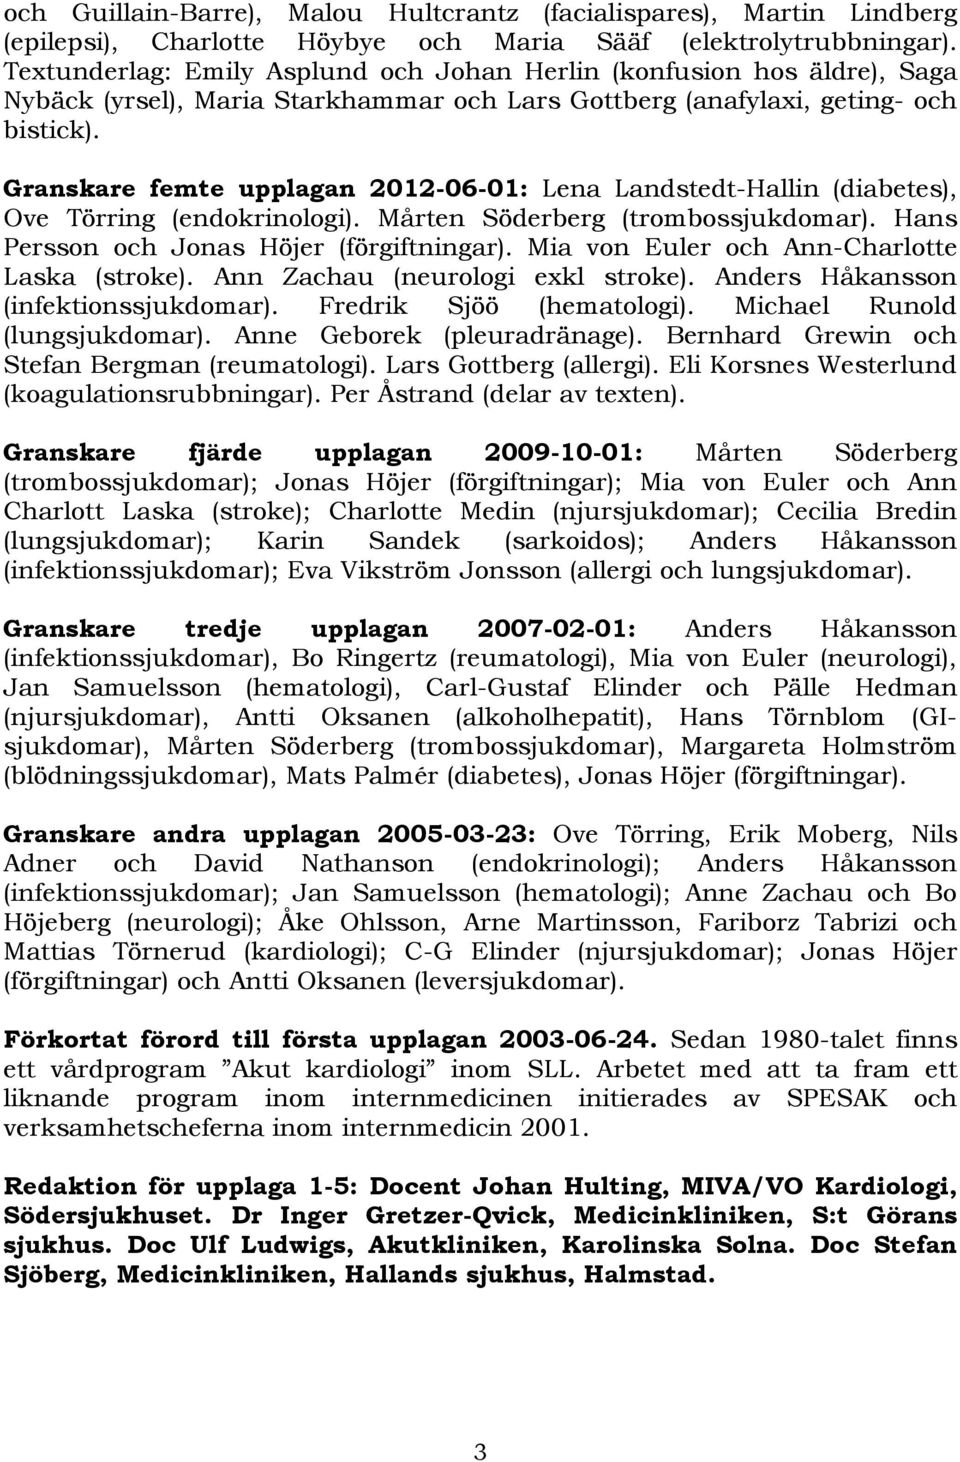 Granskare femte upplagan 2012-06-01: Lena Landstedt-Hallin (diabetes), Ove Törring (endokrinologi). Mårten Söderberg (trombossjukdomar). Hans Persson och Jonas Höjer (förgiftningar).